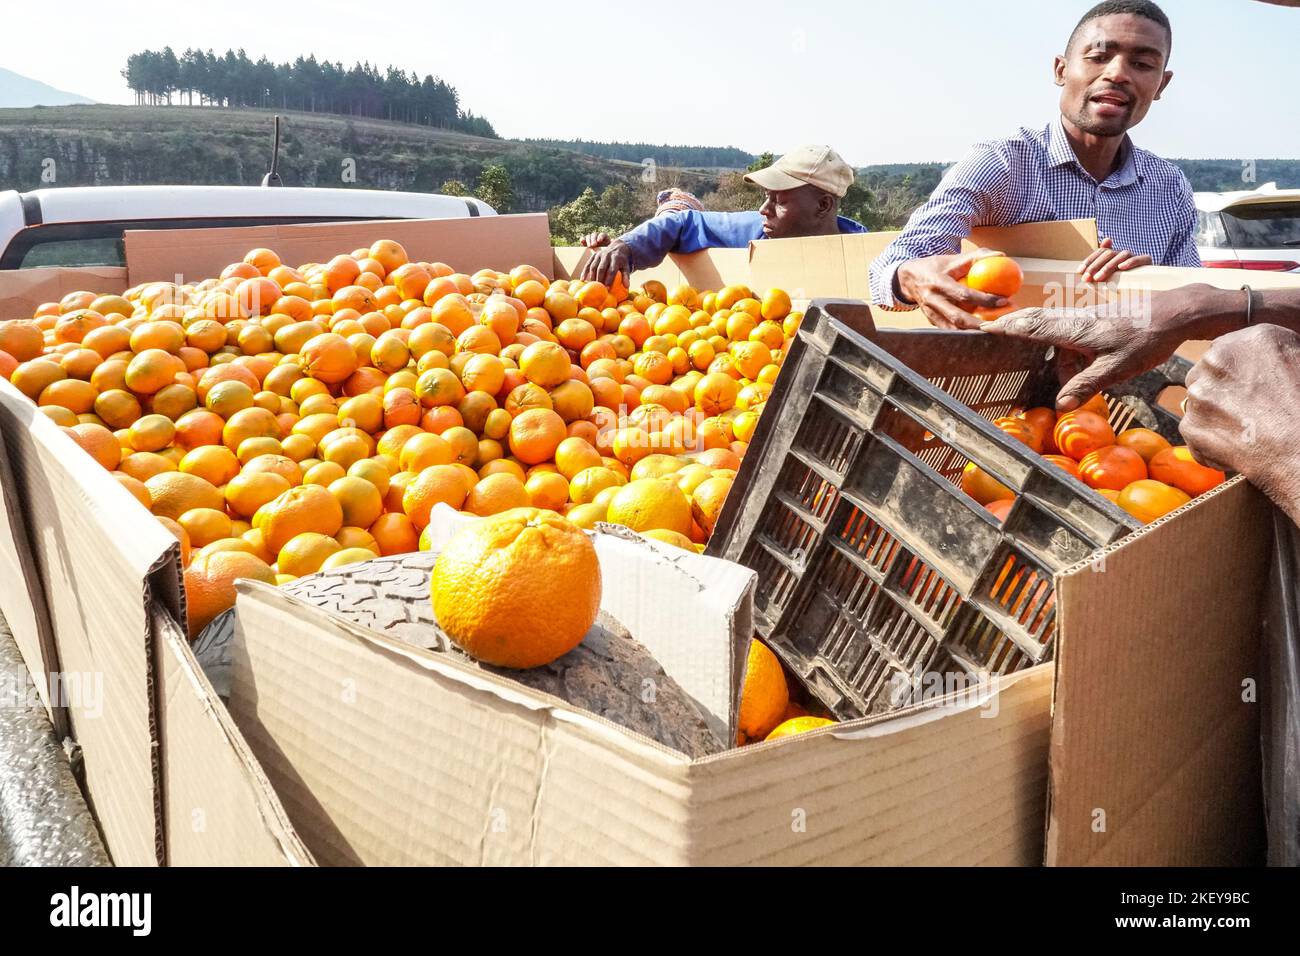 Vendedor de frutas que vende naranjas o cítricos desde la parte trasera de un vehículo en una zona rural de Mpumalanga, Sudáfrica Concepto de negocios o comercio informal Foto de stock